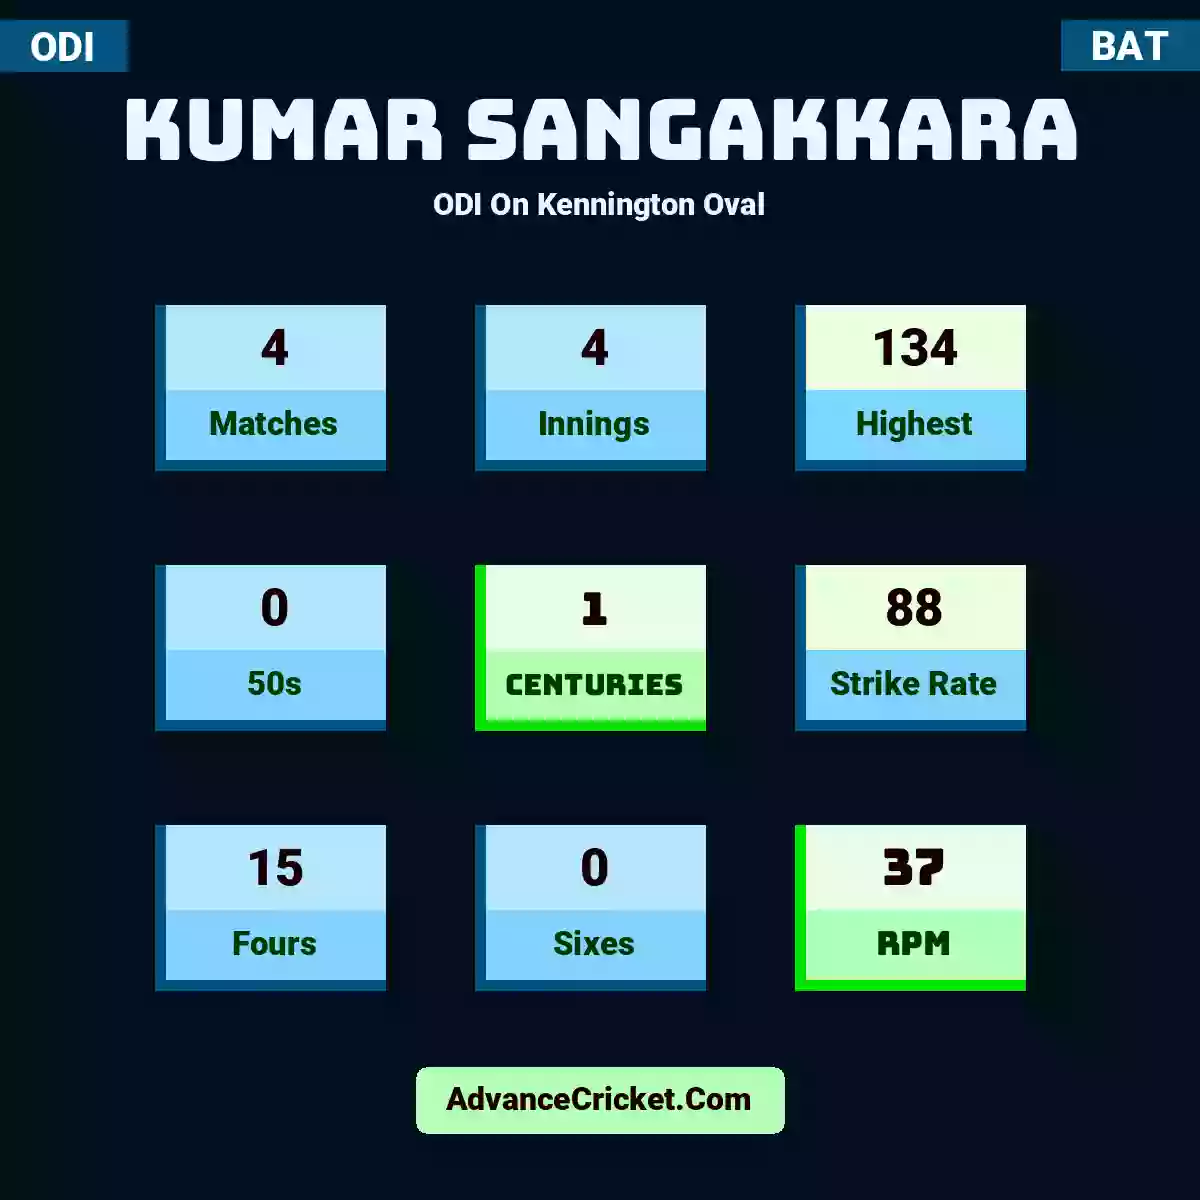 Kumar Sangakkara ODI  On Kennington Oval, Kumar Sangakkara played 4 matches, scored 134 runs as highest, 0 half-centuries, and 1 centuries, with a strike rate of 88. K.Sangakkara hit 15 fours and 0 sixes, with an RPM of 37.